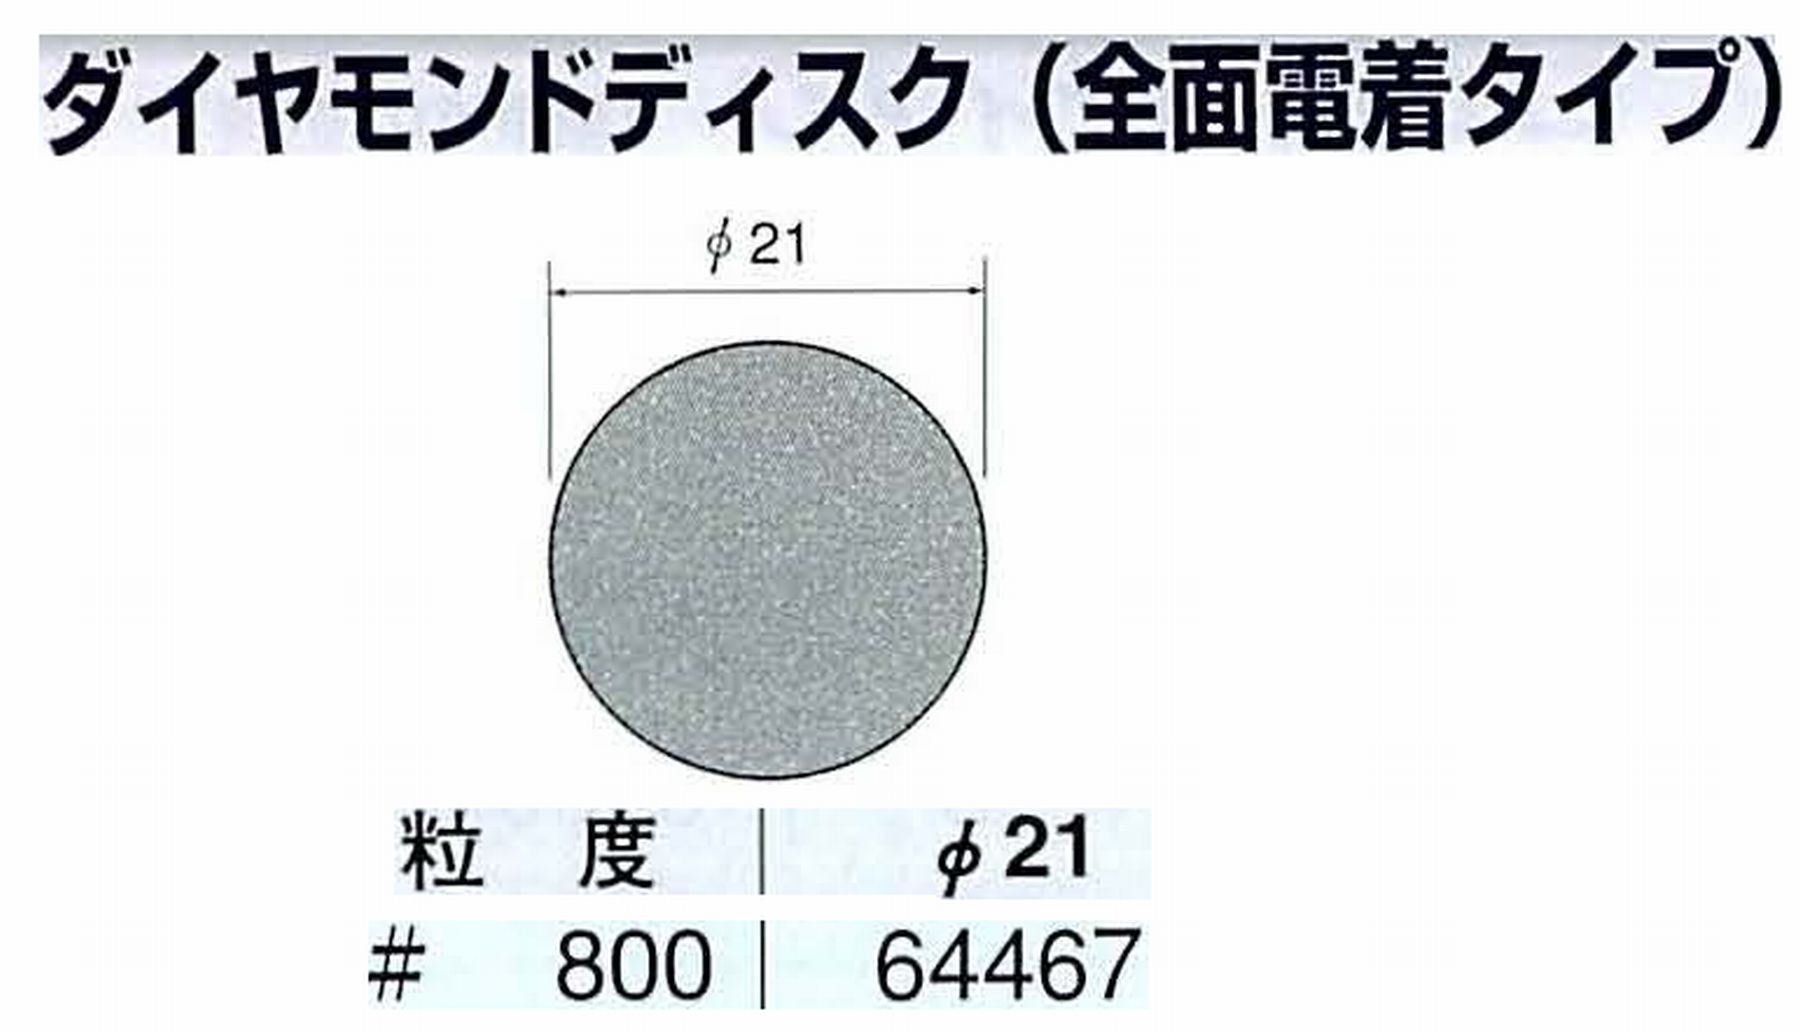 ナカニシ/NAKANISHI アングルグラインダ(電動・エアー) アングルアタッチメント専用工具 ダイヤモンドディスク(全面電着タイプ) 64467